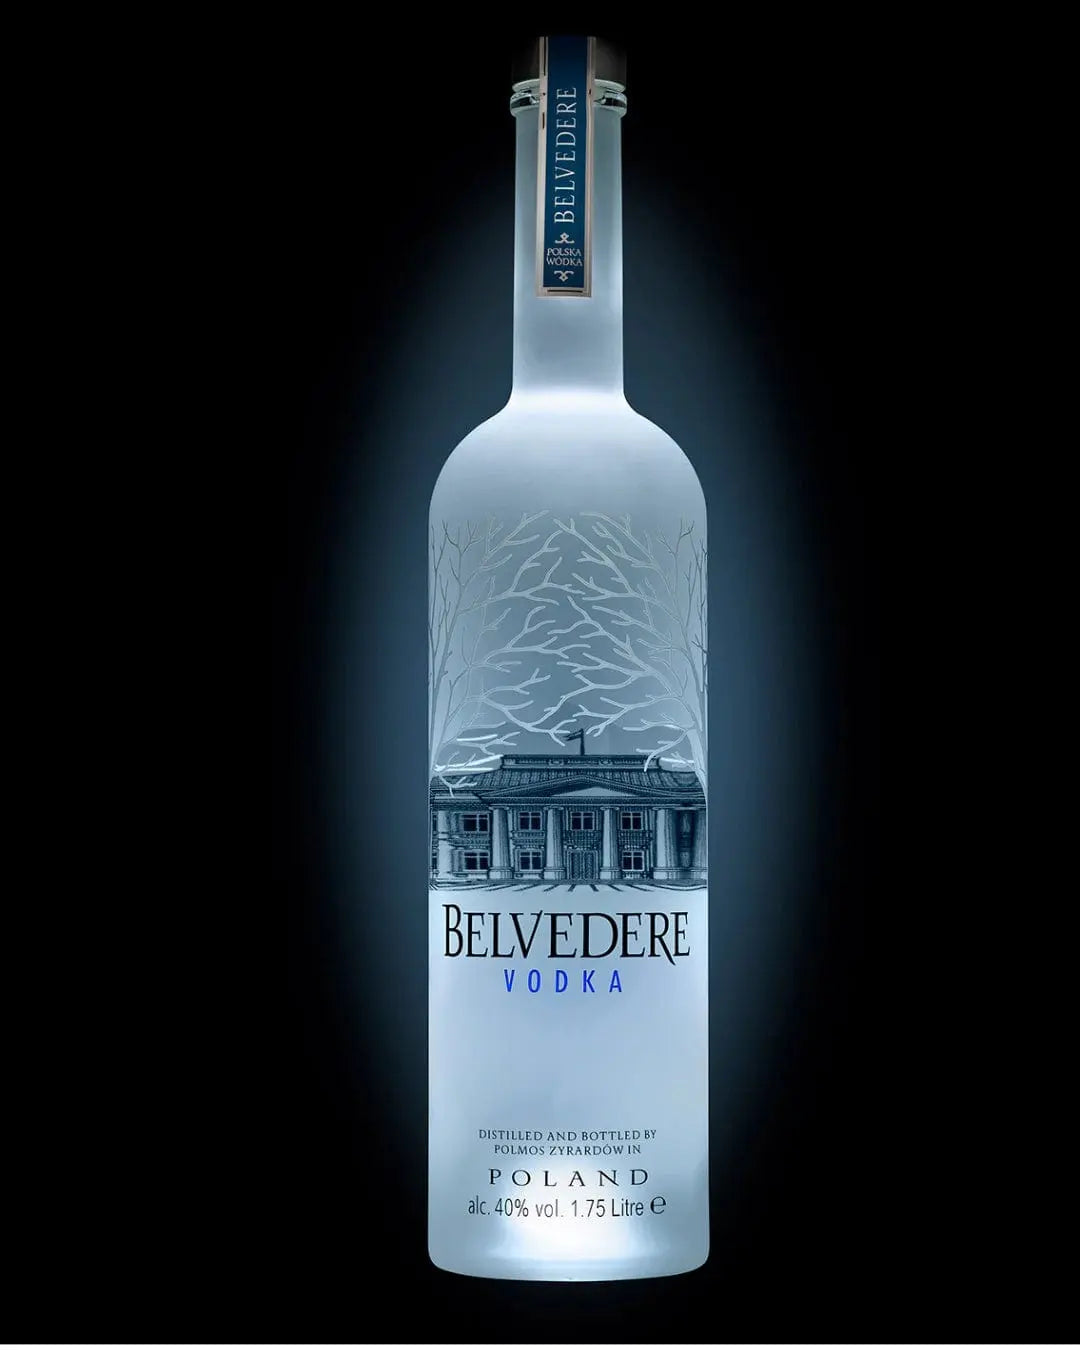 Belvedere - Premium Spirits - Mantequerías Bravo